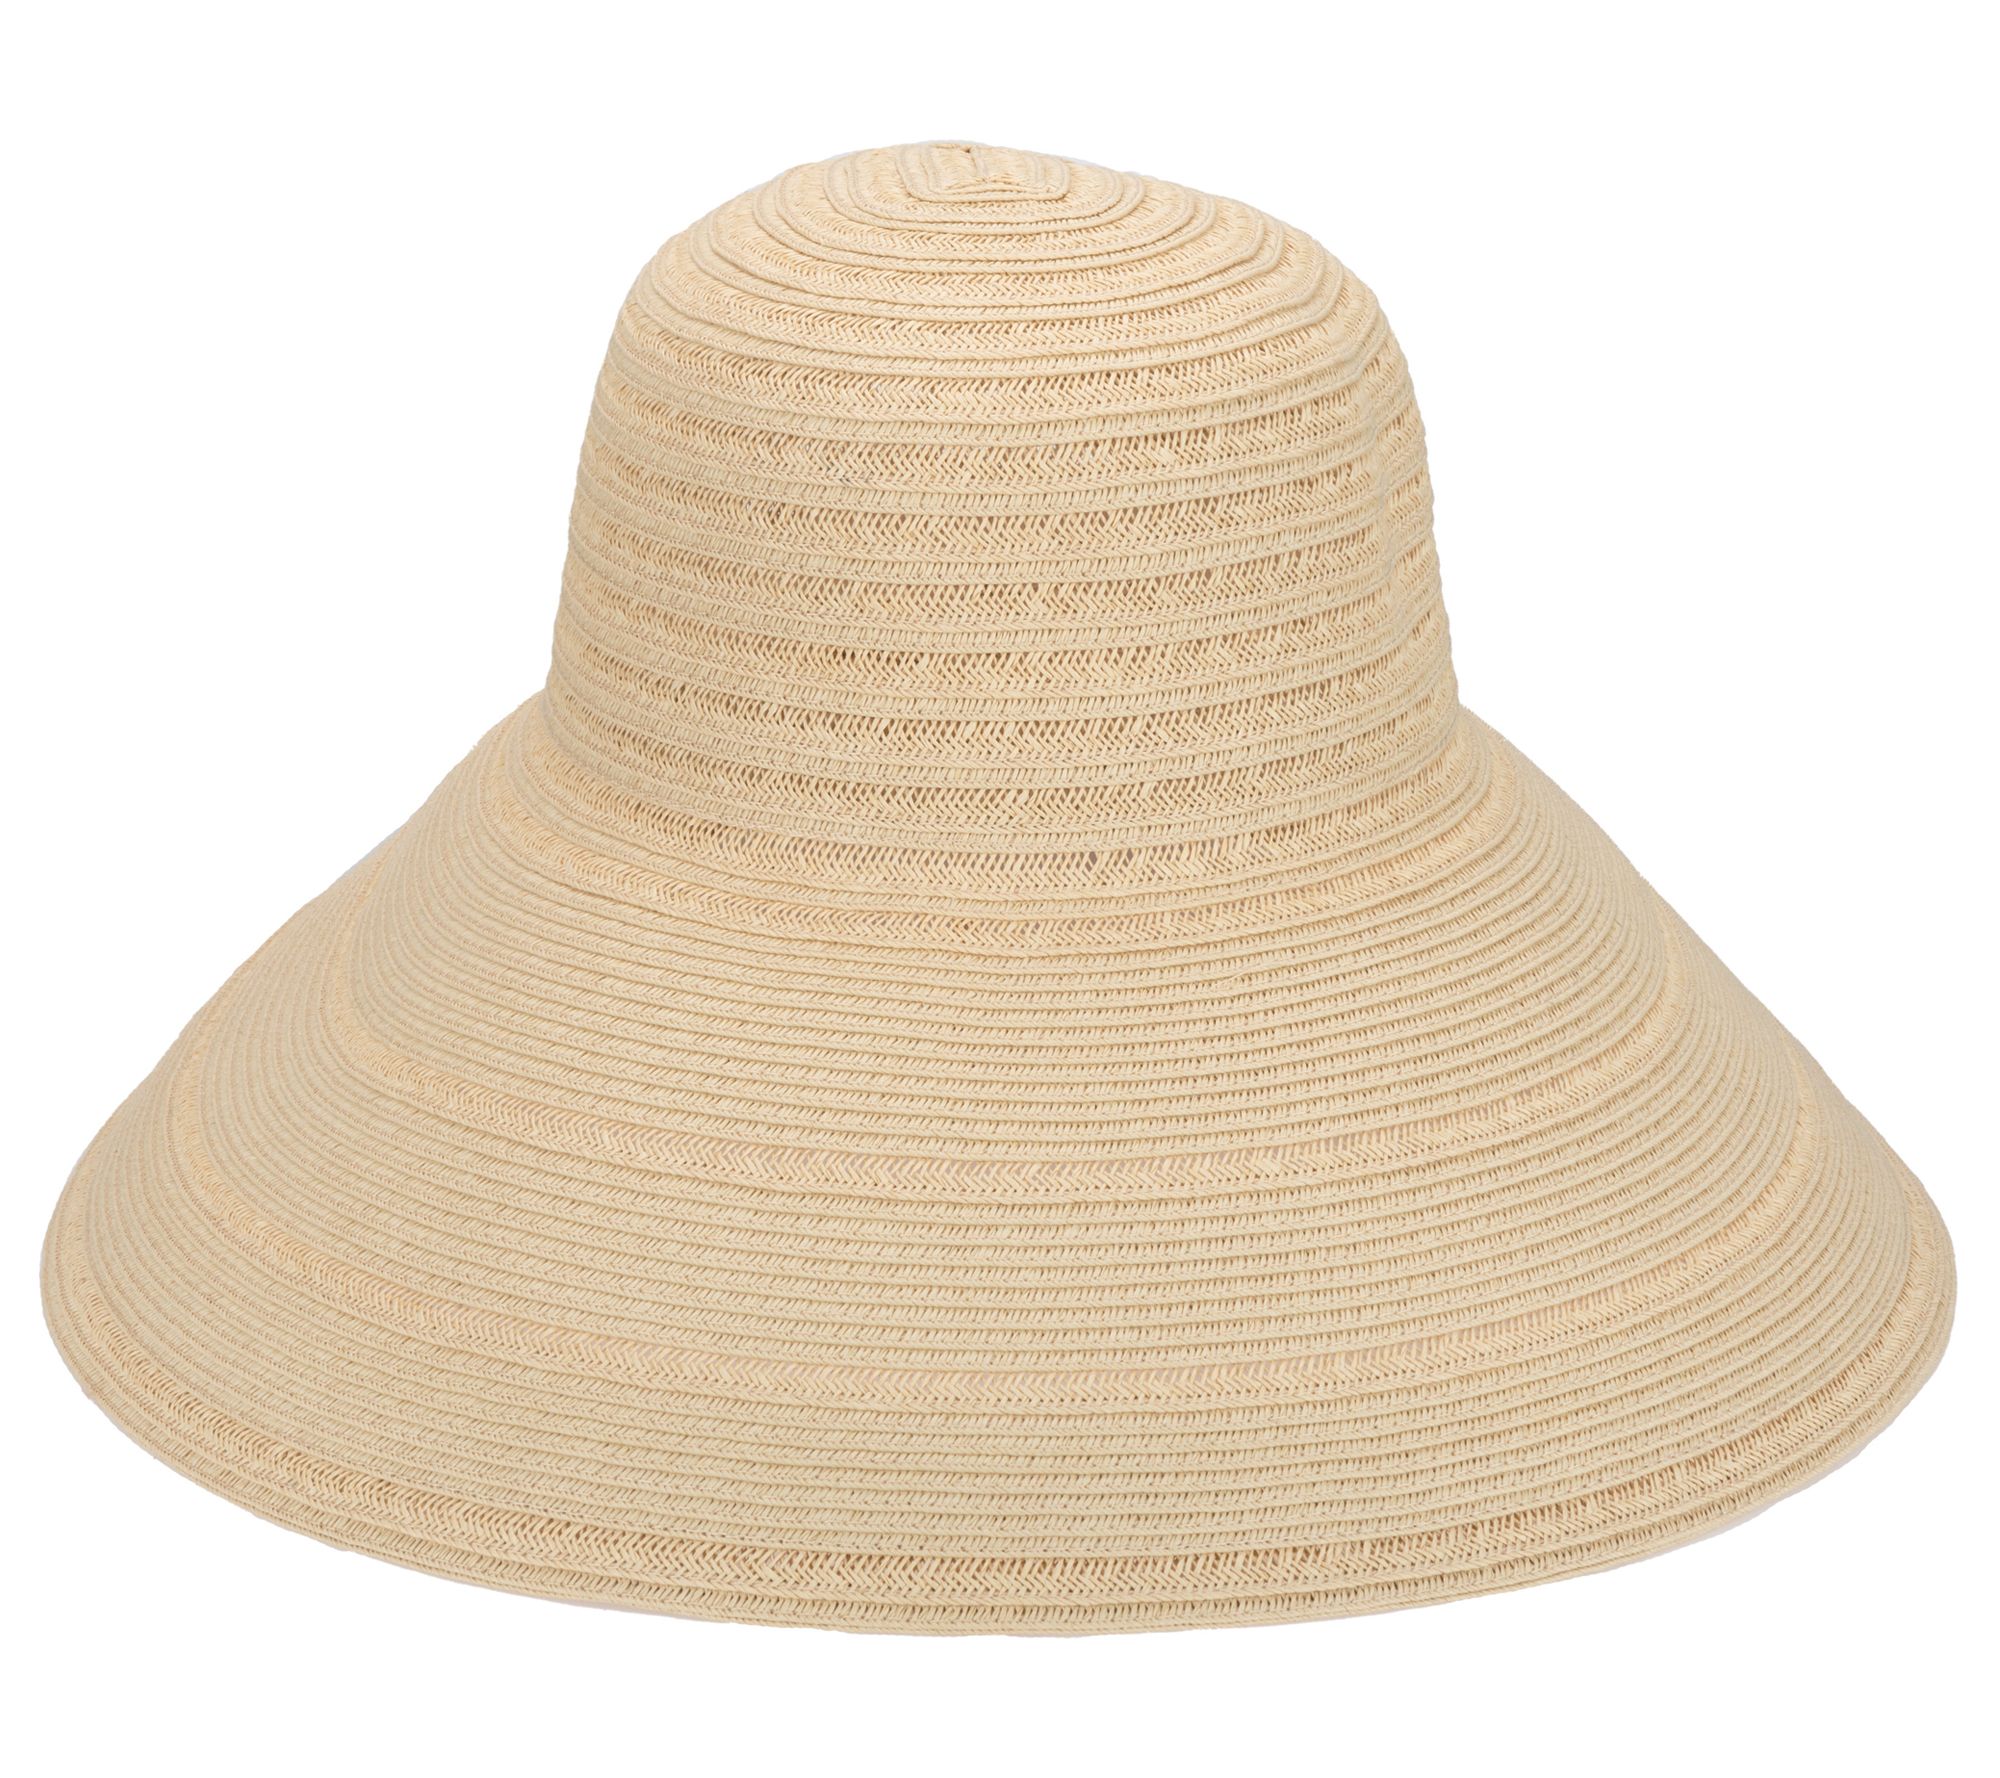 SDHC Newport - Women's 6-Way Round Crown Sun Hat Natural